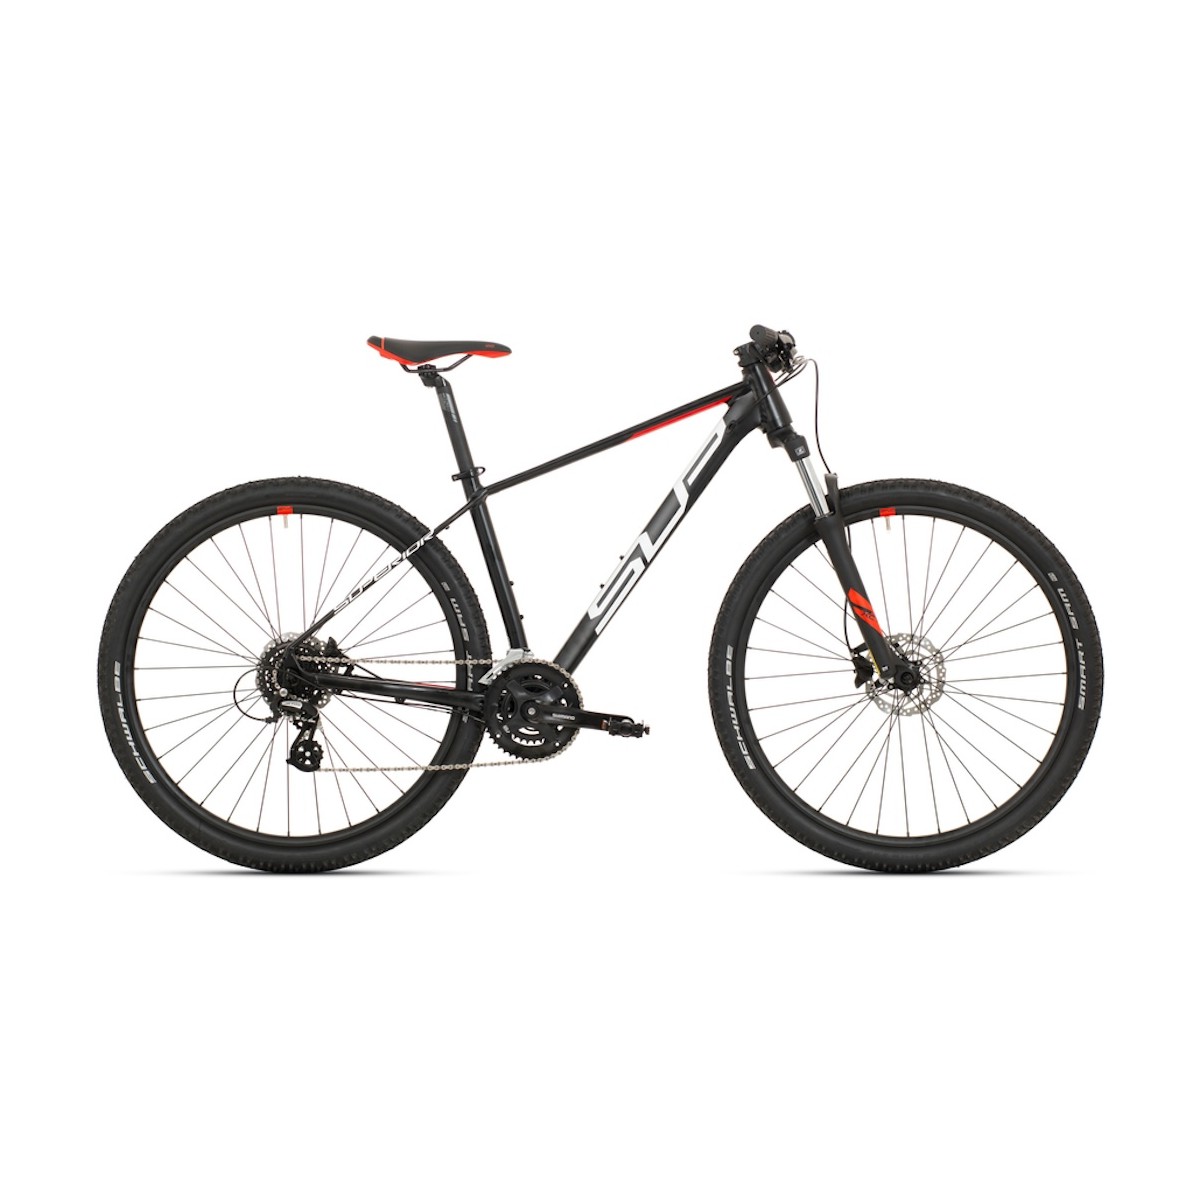 SUPERIOR XC 819 29 mountain bike - black/white - 2022